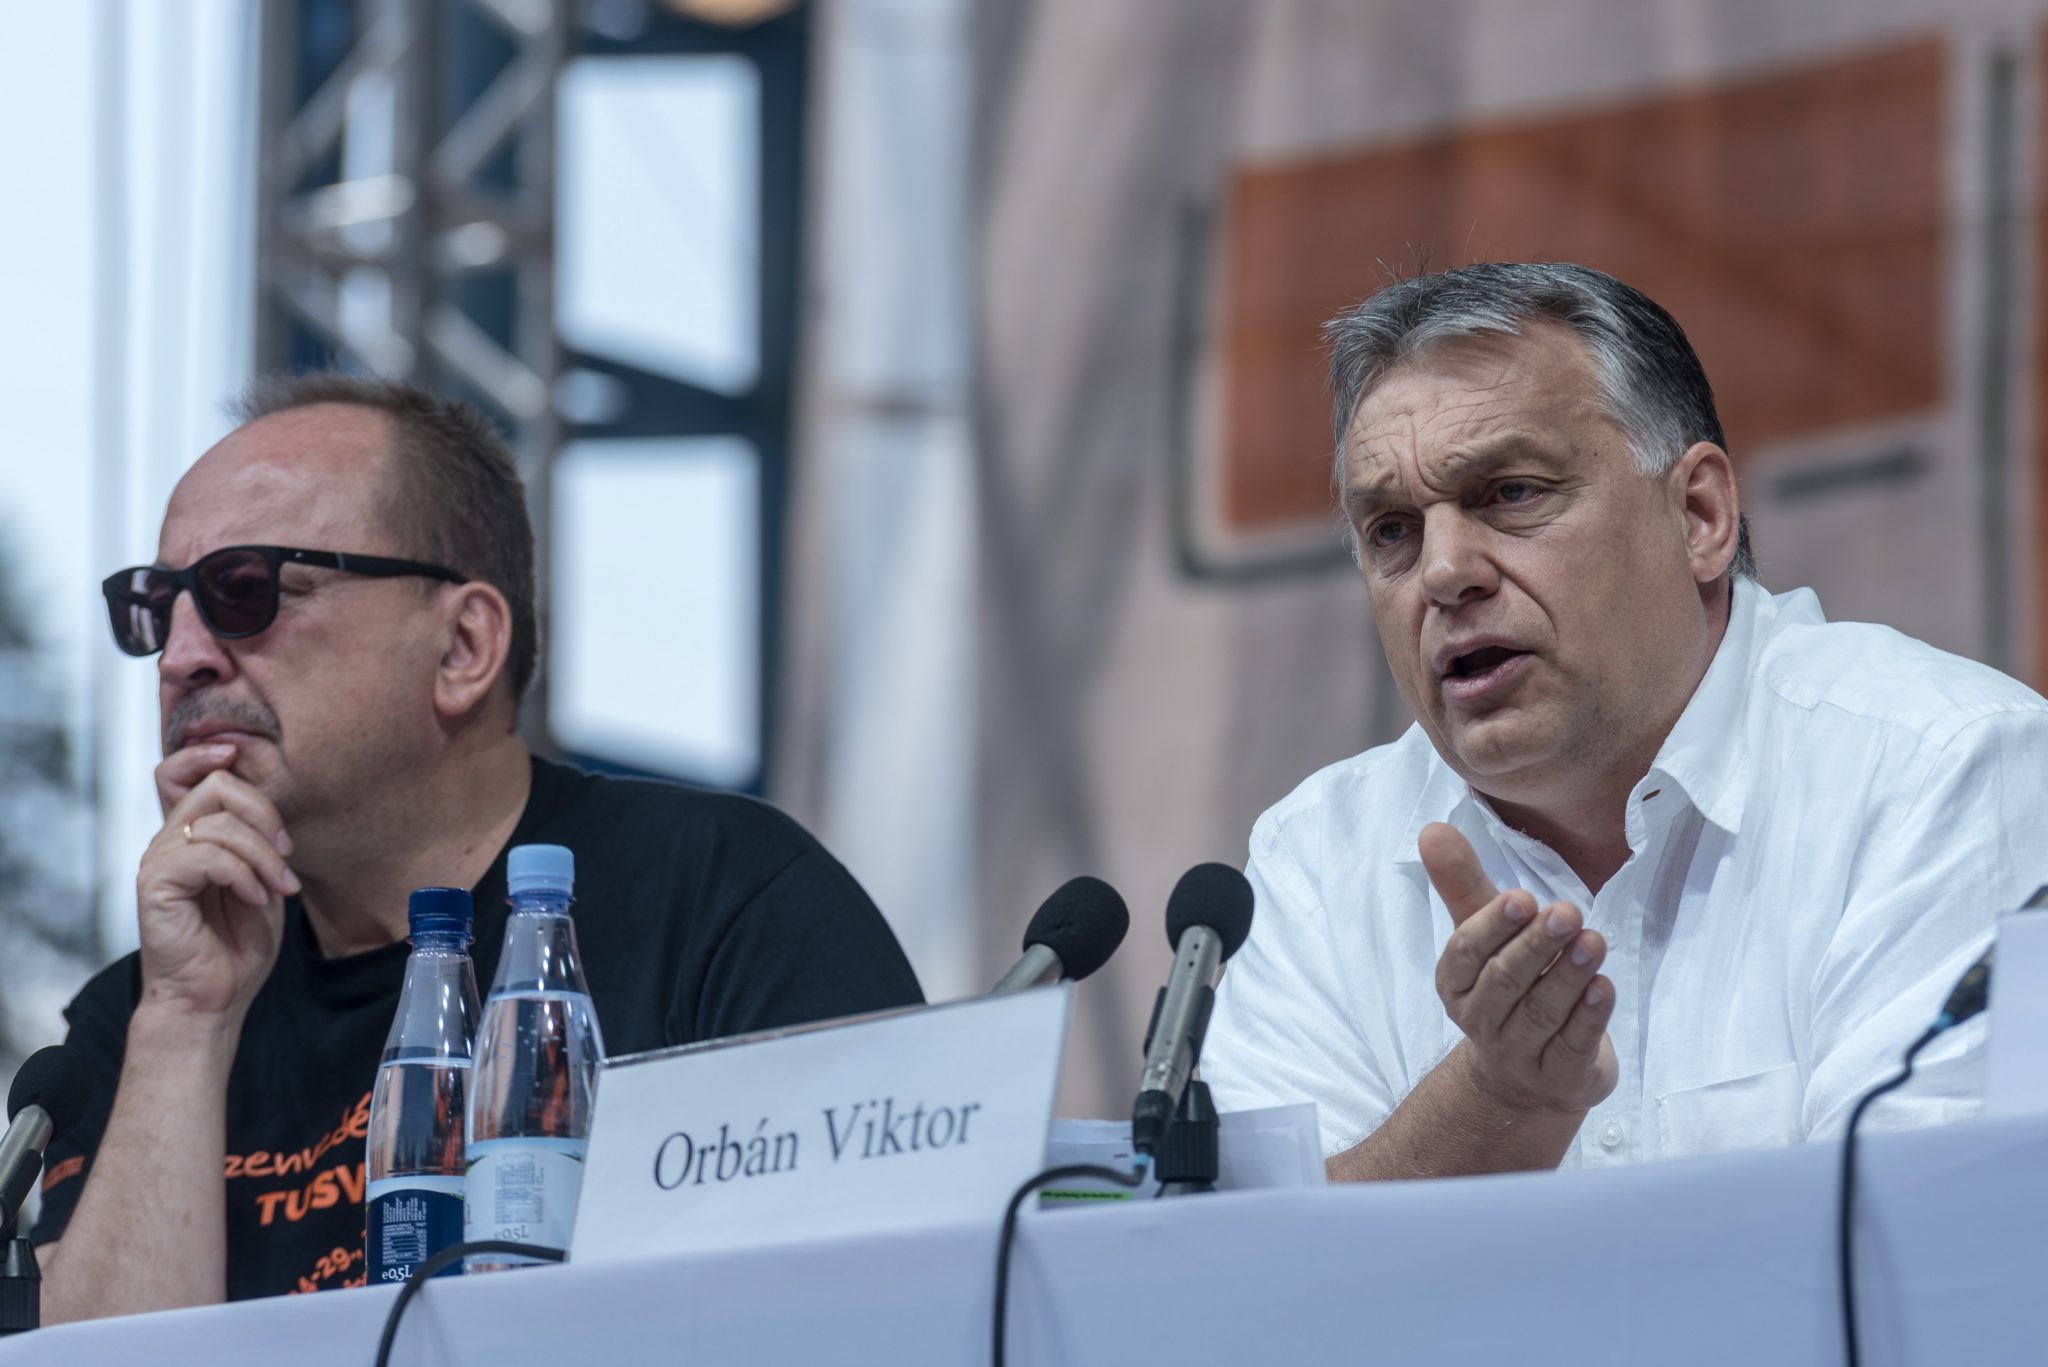 Orbán Tusványos Summer University